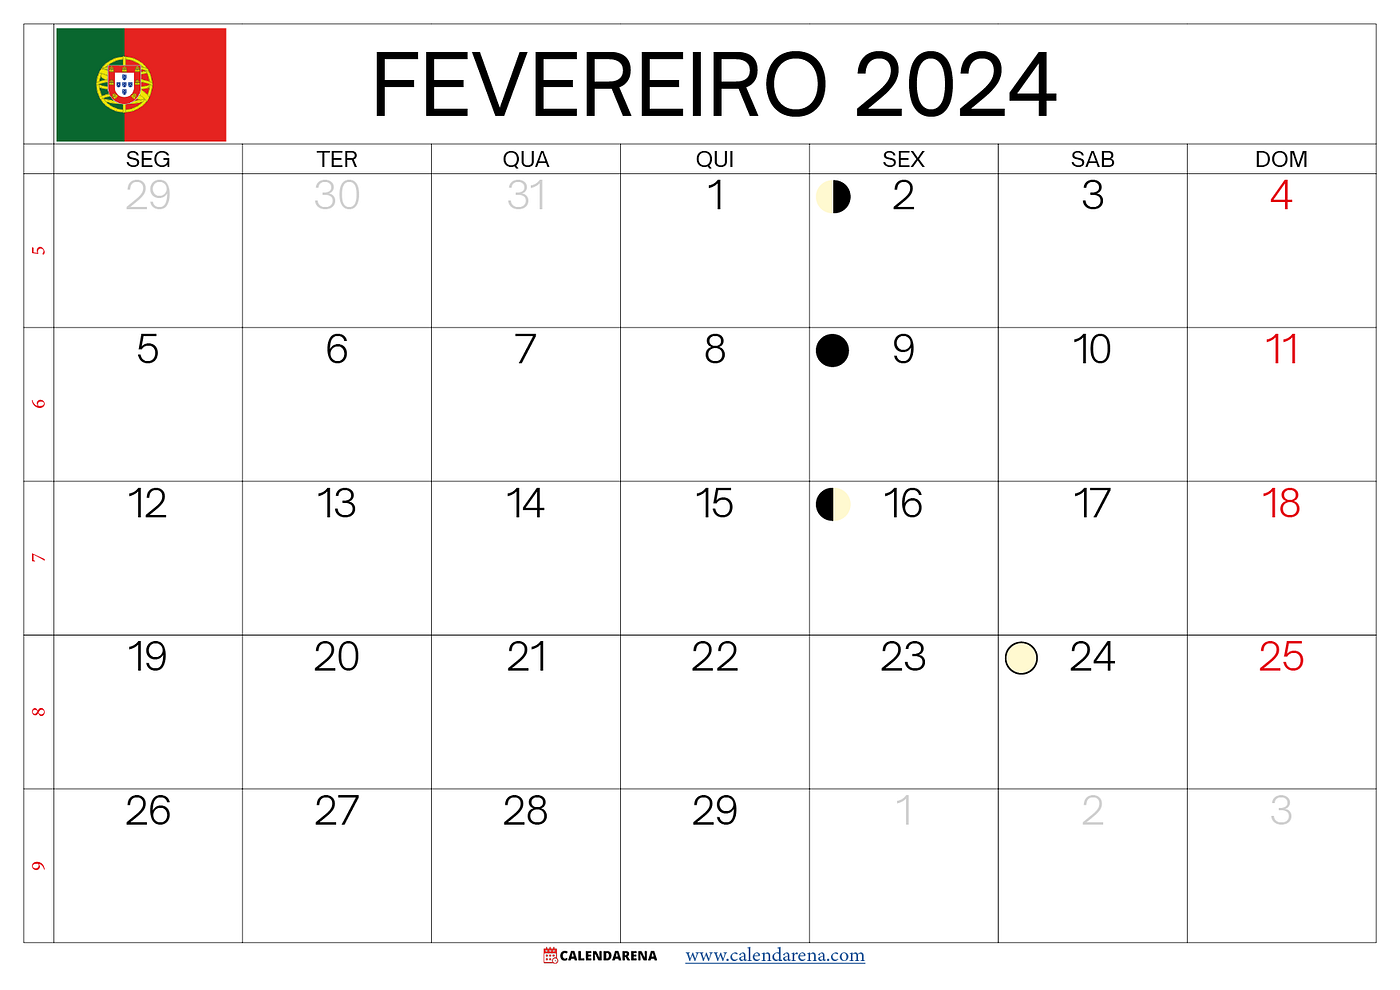 Calendário Fevereiro 2024 Portugal, by Calendarena